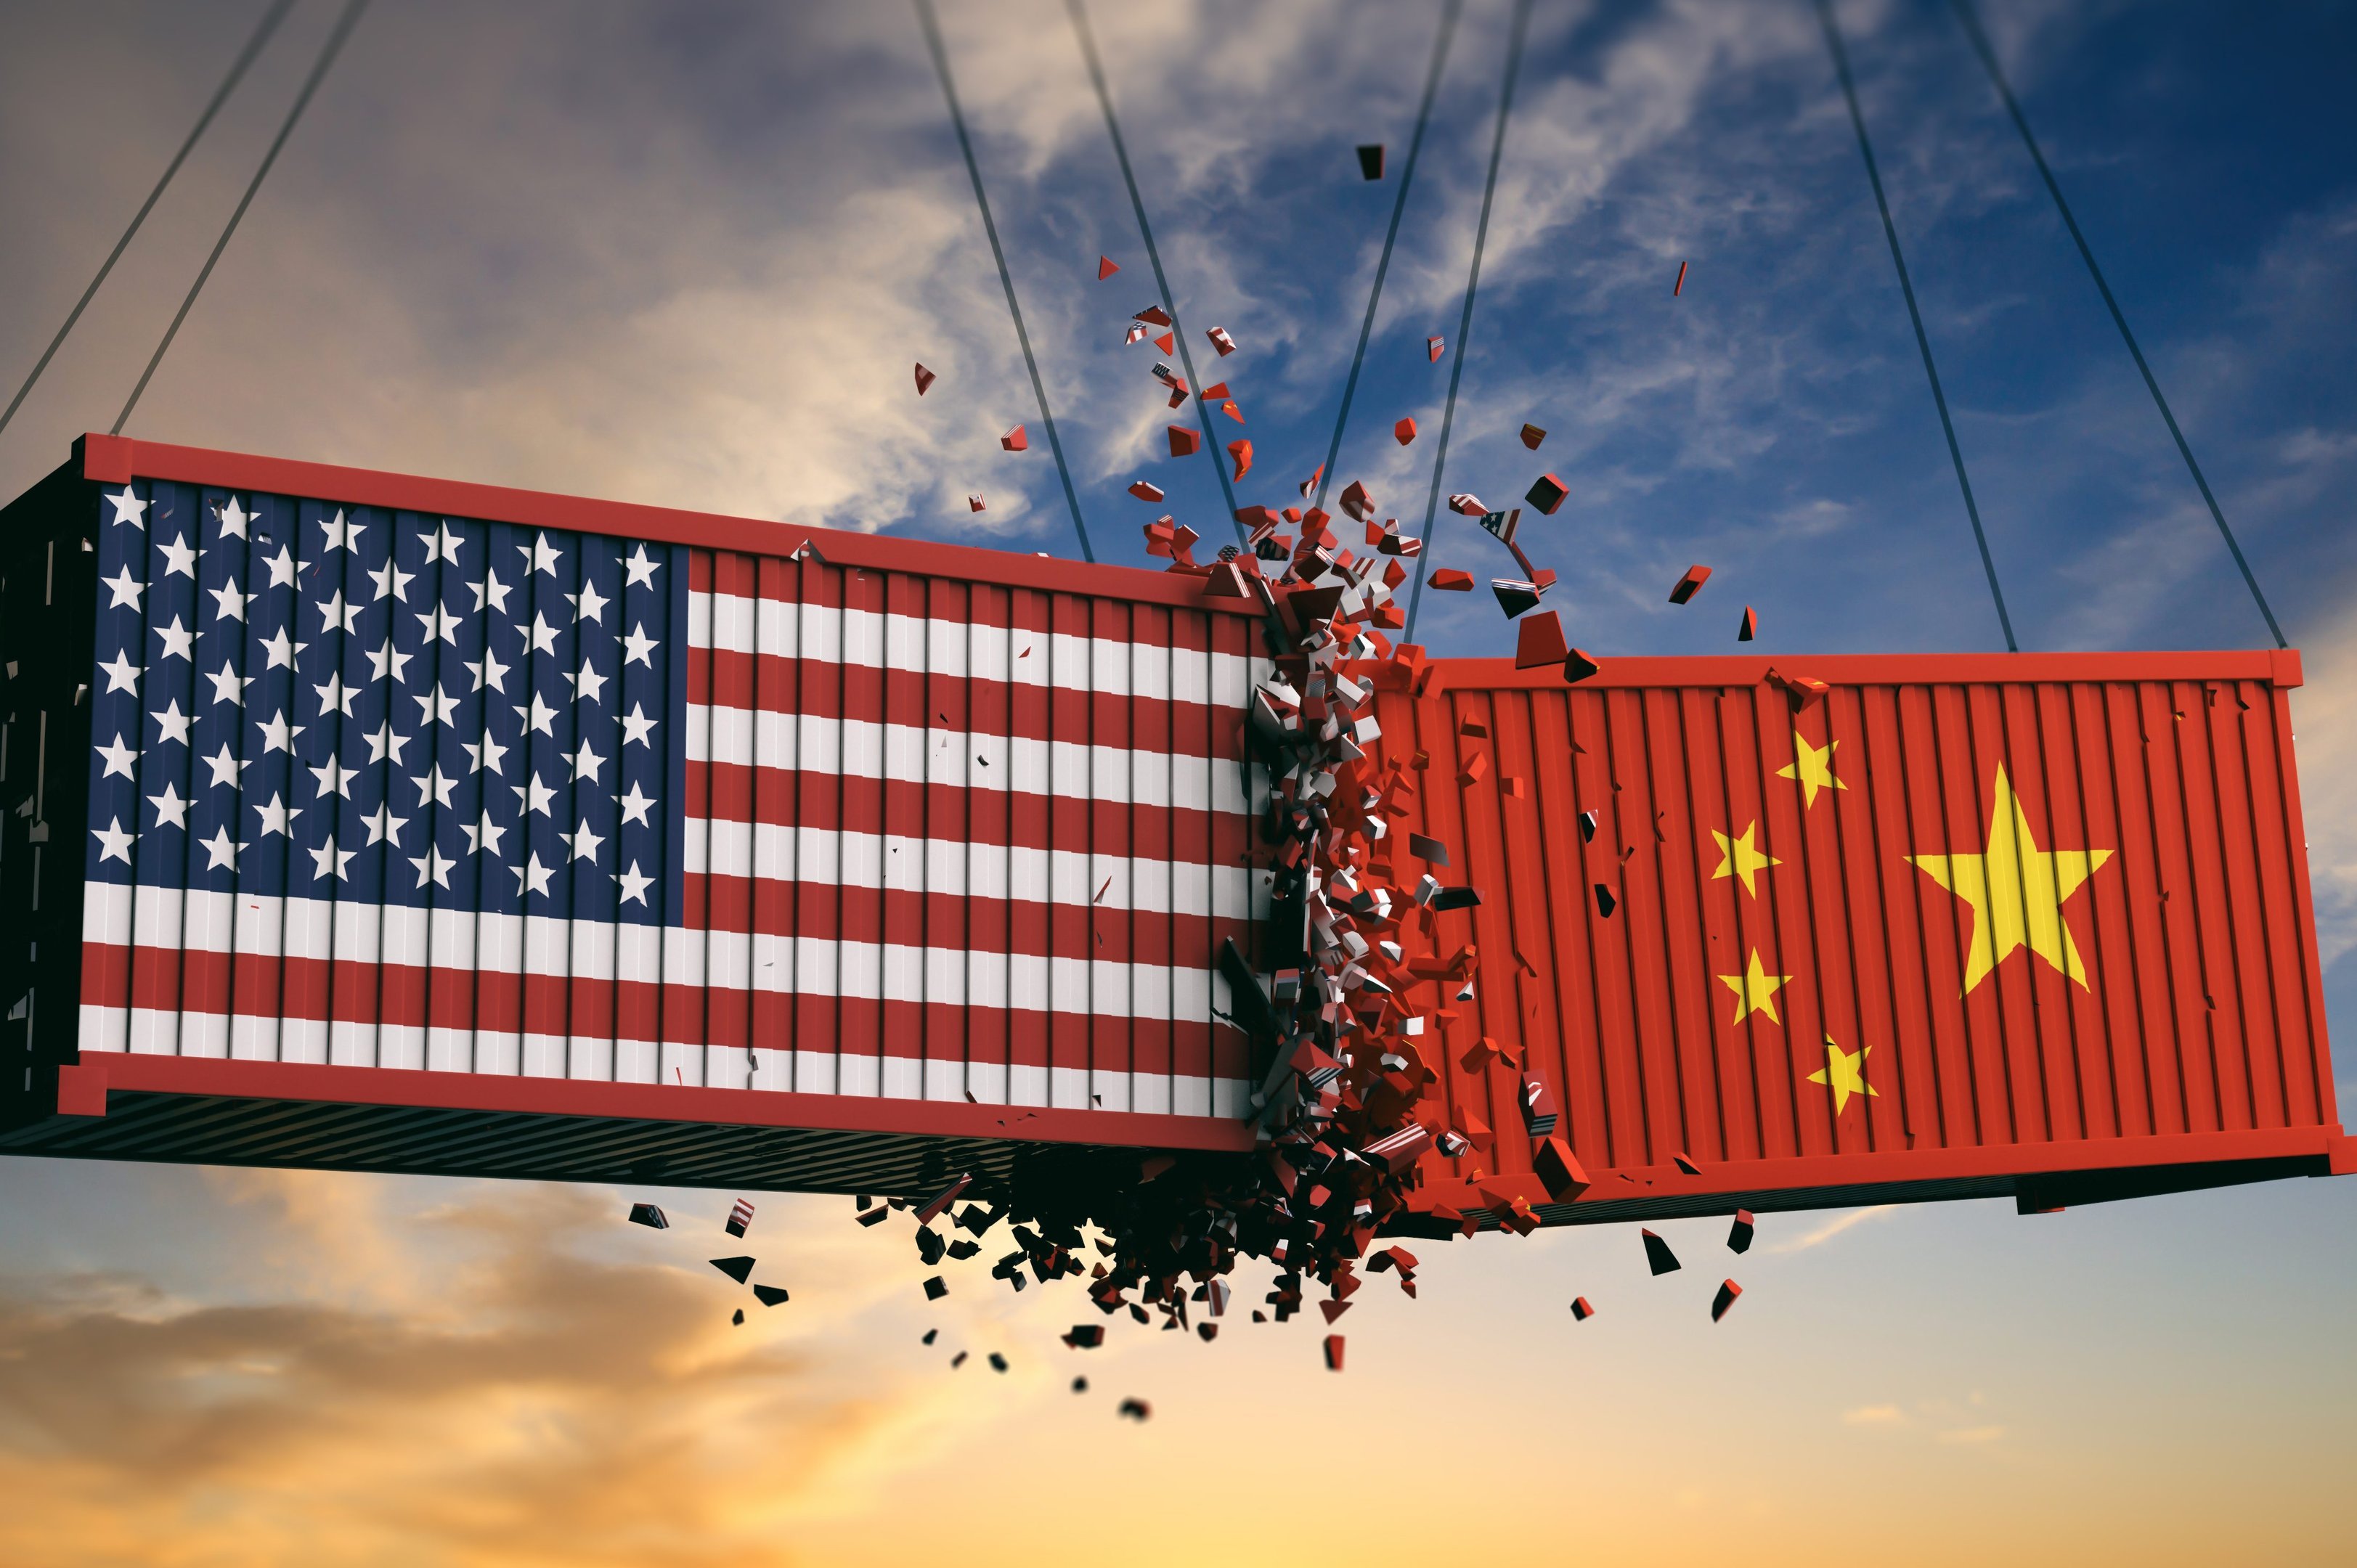 Conflito EUA X China vive pior fase, segundo economistas — o que esperar? | Exame